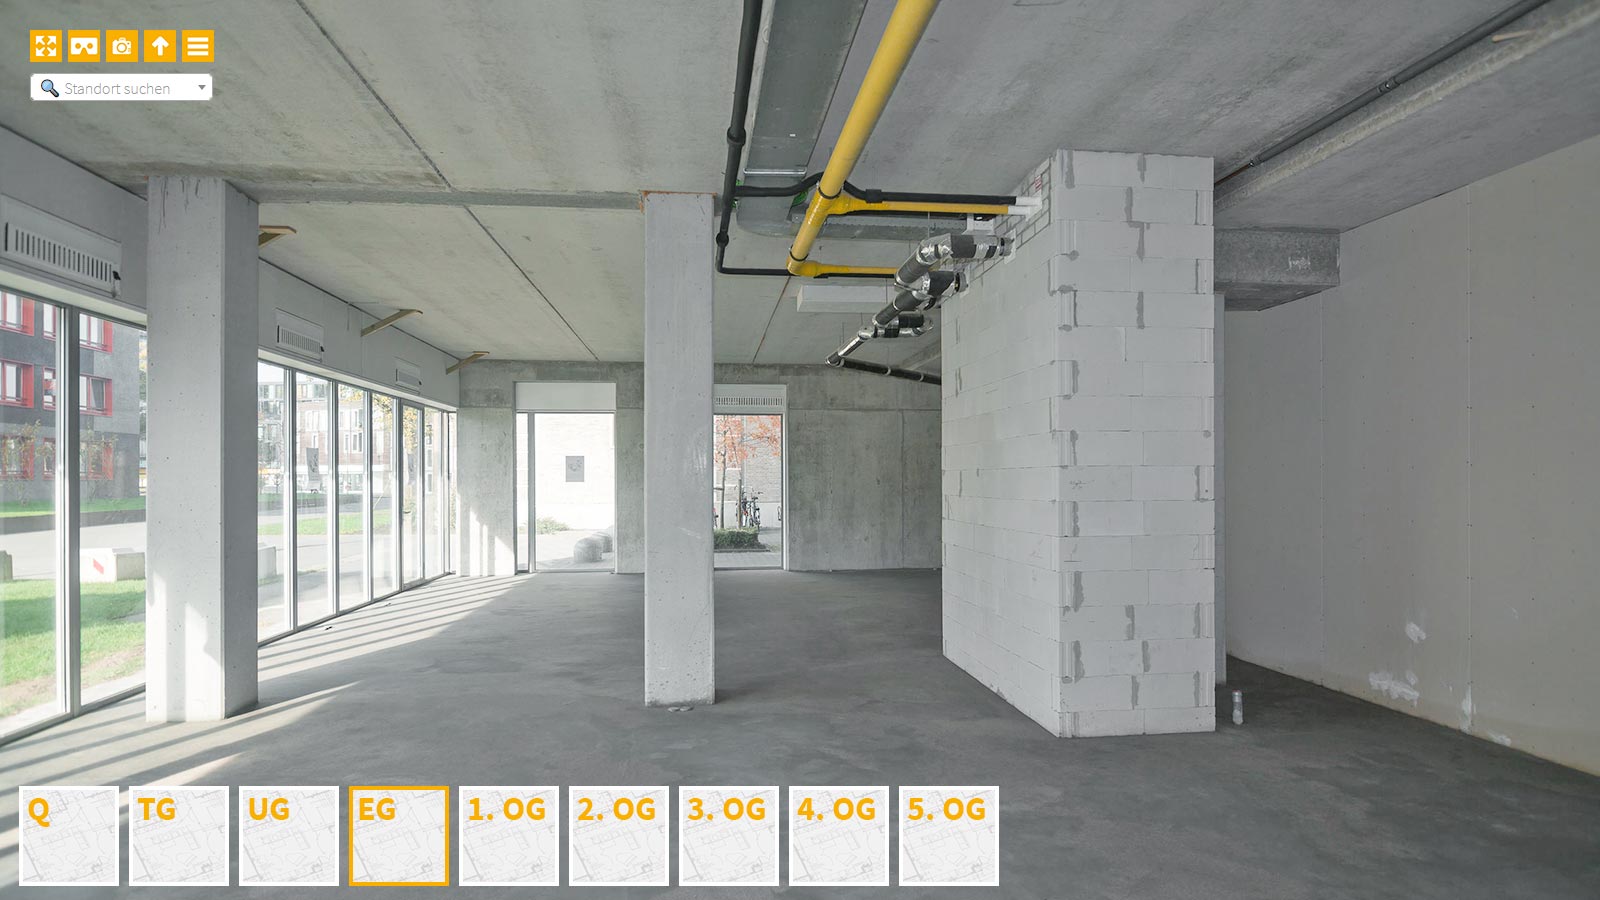 Baudokumentation 360 Grad bei gestörten Projekten in 


	


	


	


	


	


	


	


	


	


	Hamburg









, Bilddokumentation als virtueller Rundgang